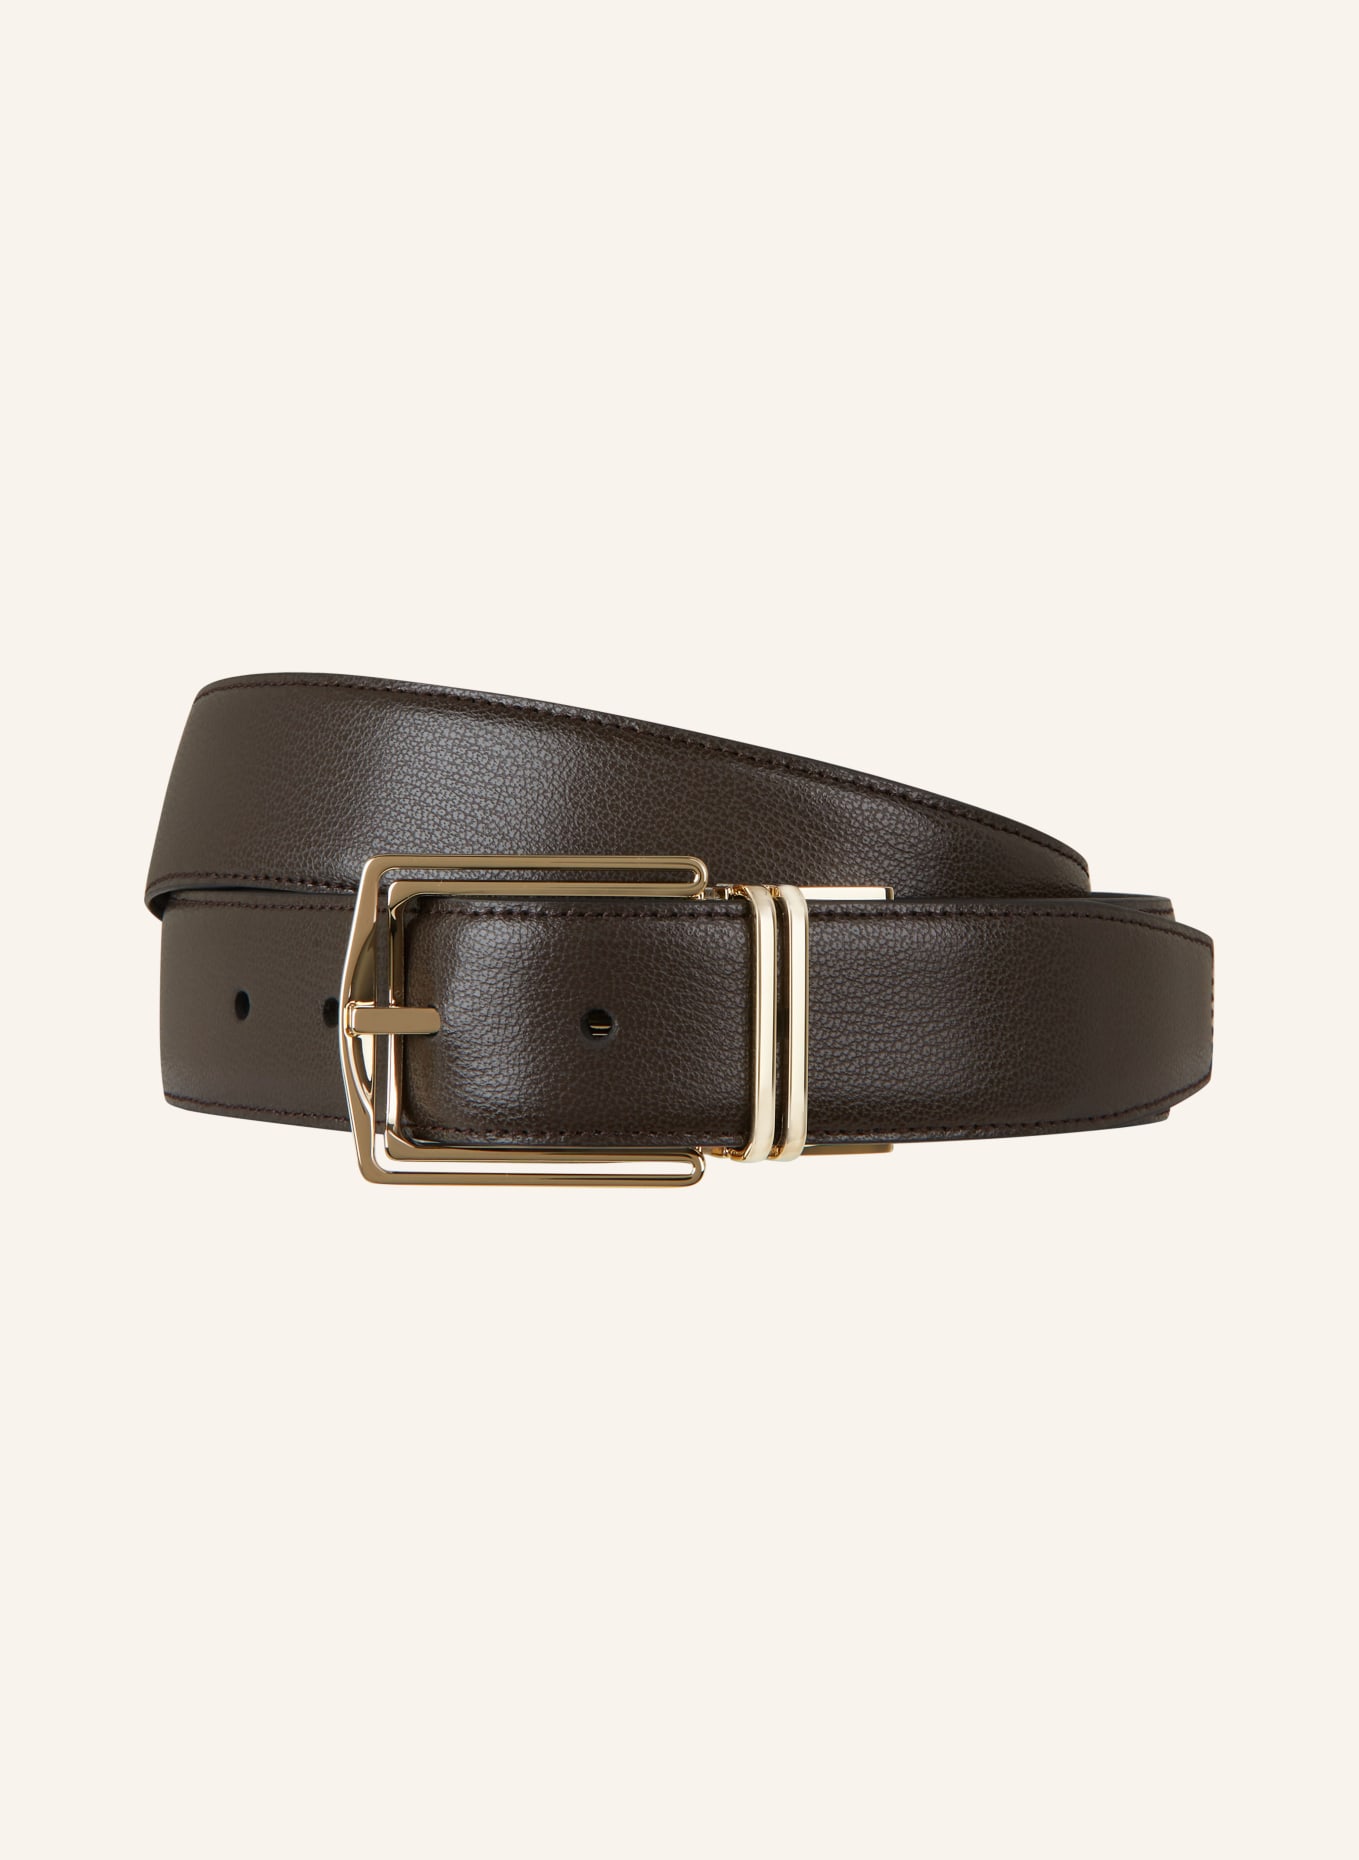 ZEGNA Leather belt, Color: DARK BROWN (Image 1)